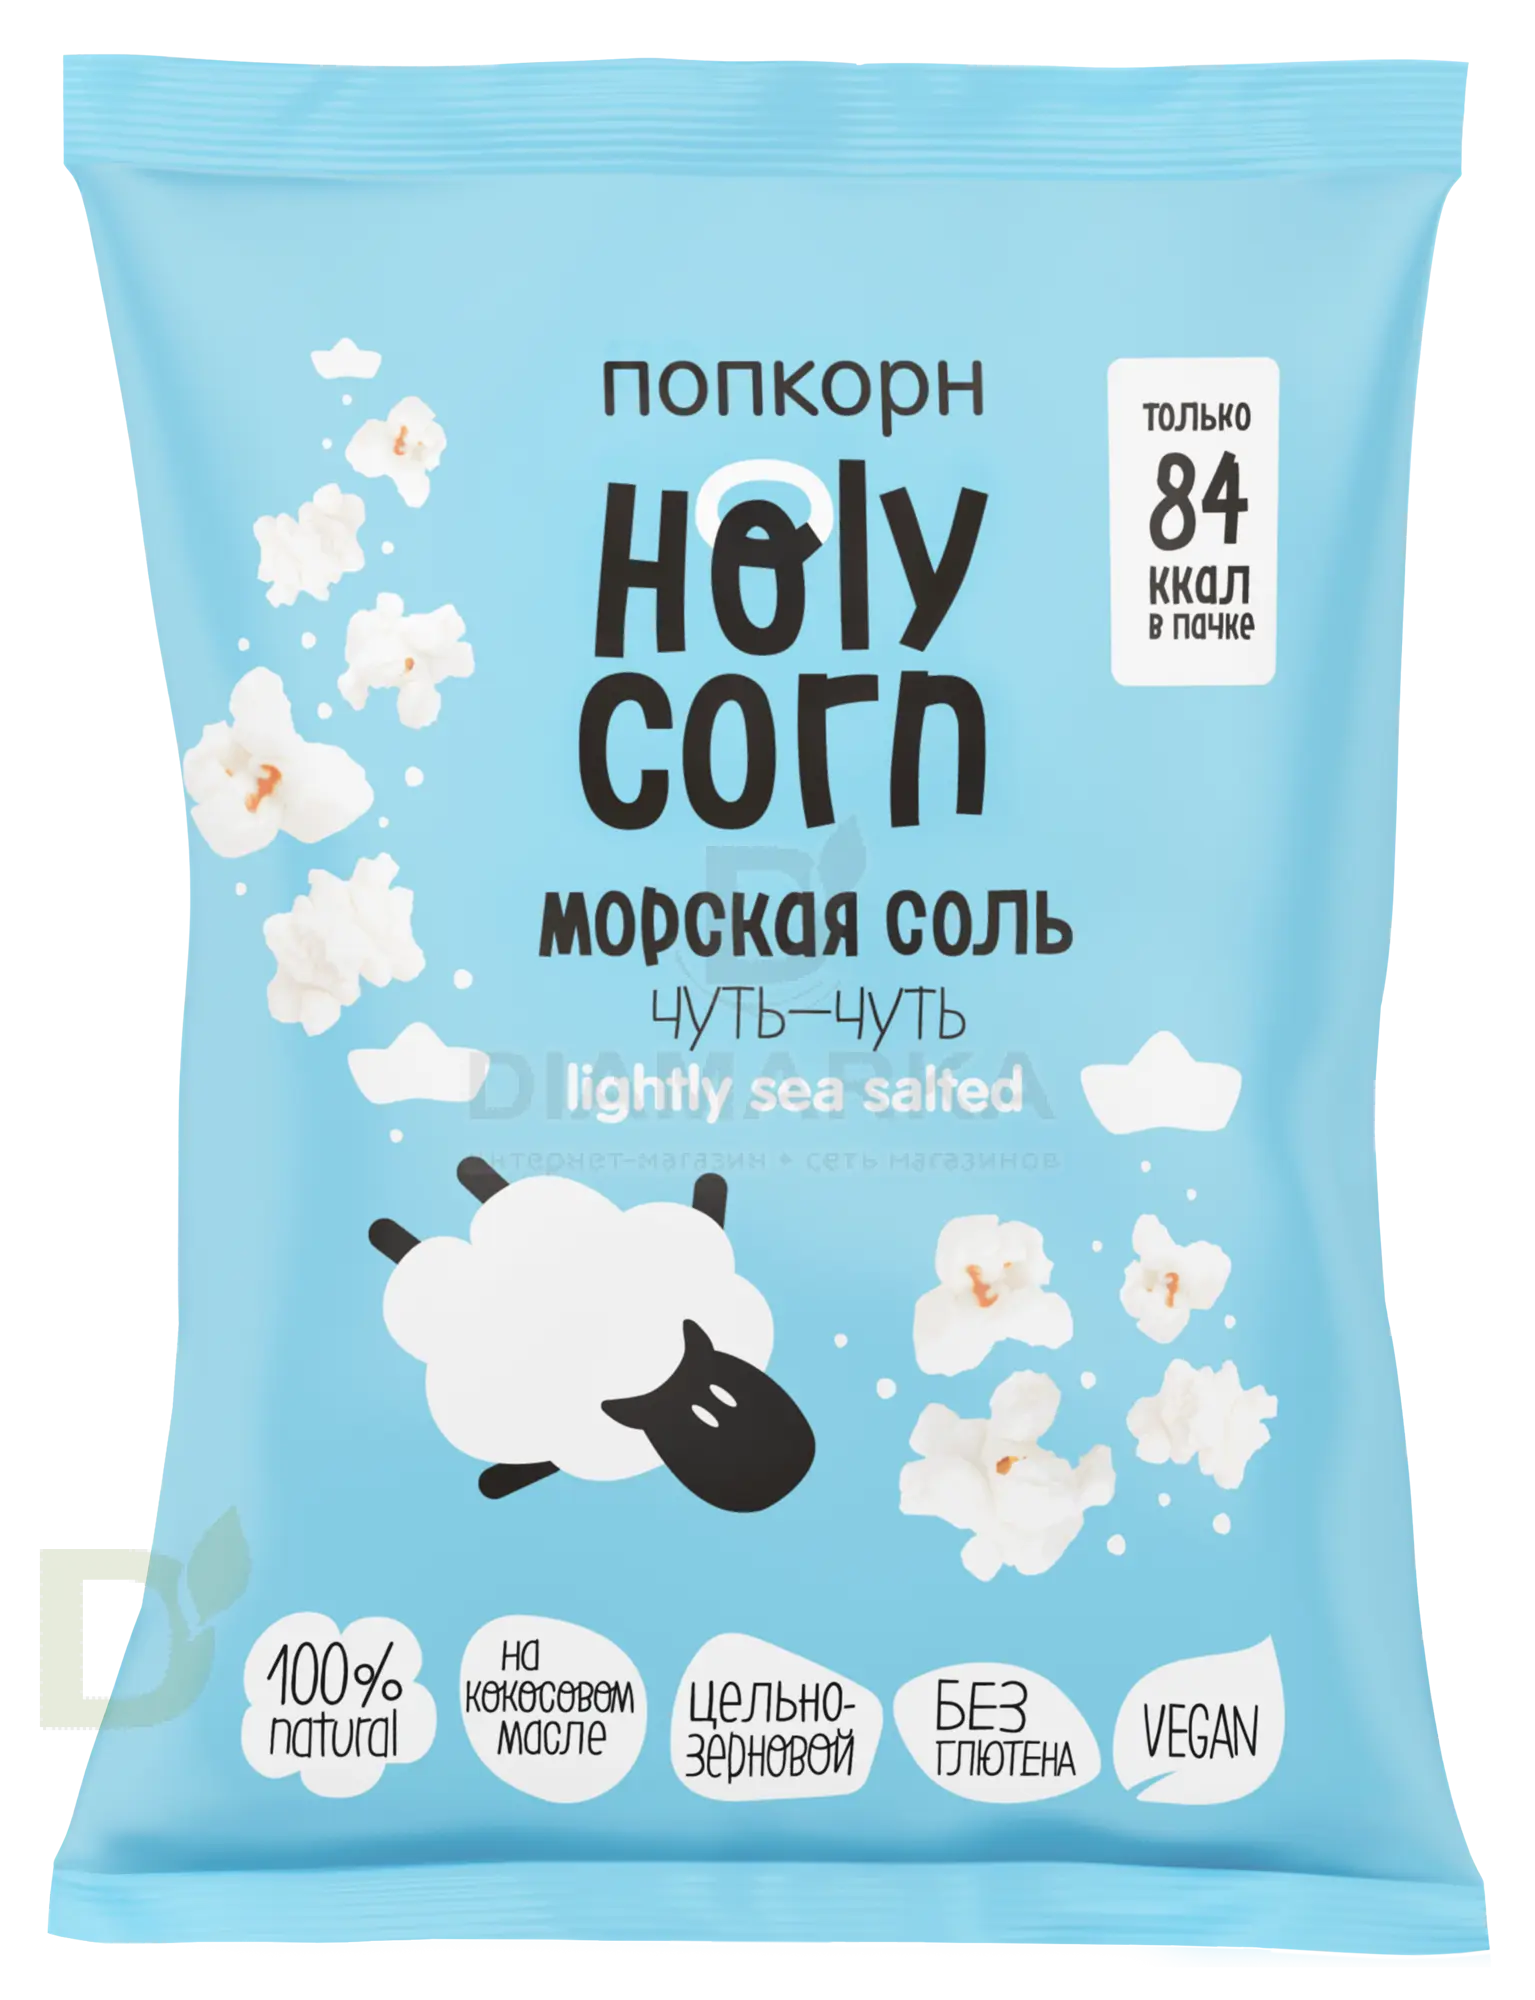 Попкорн Holy Corn "Морская соль" 20г.